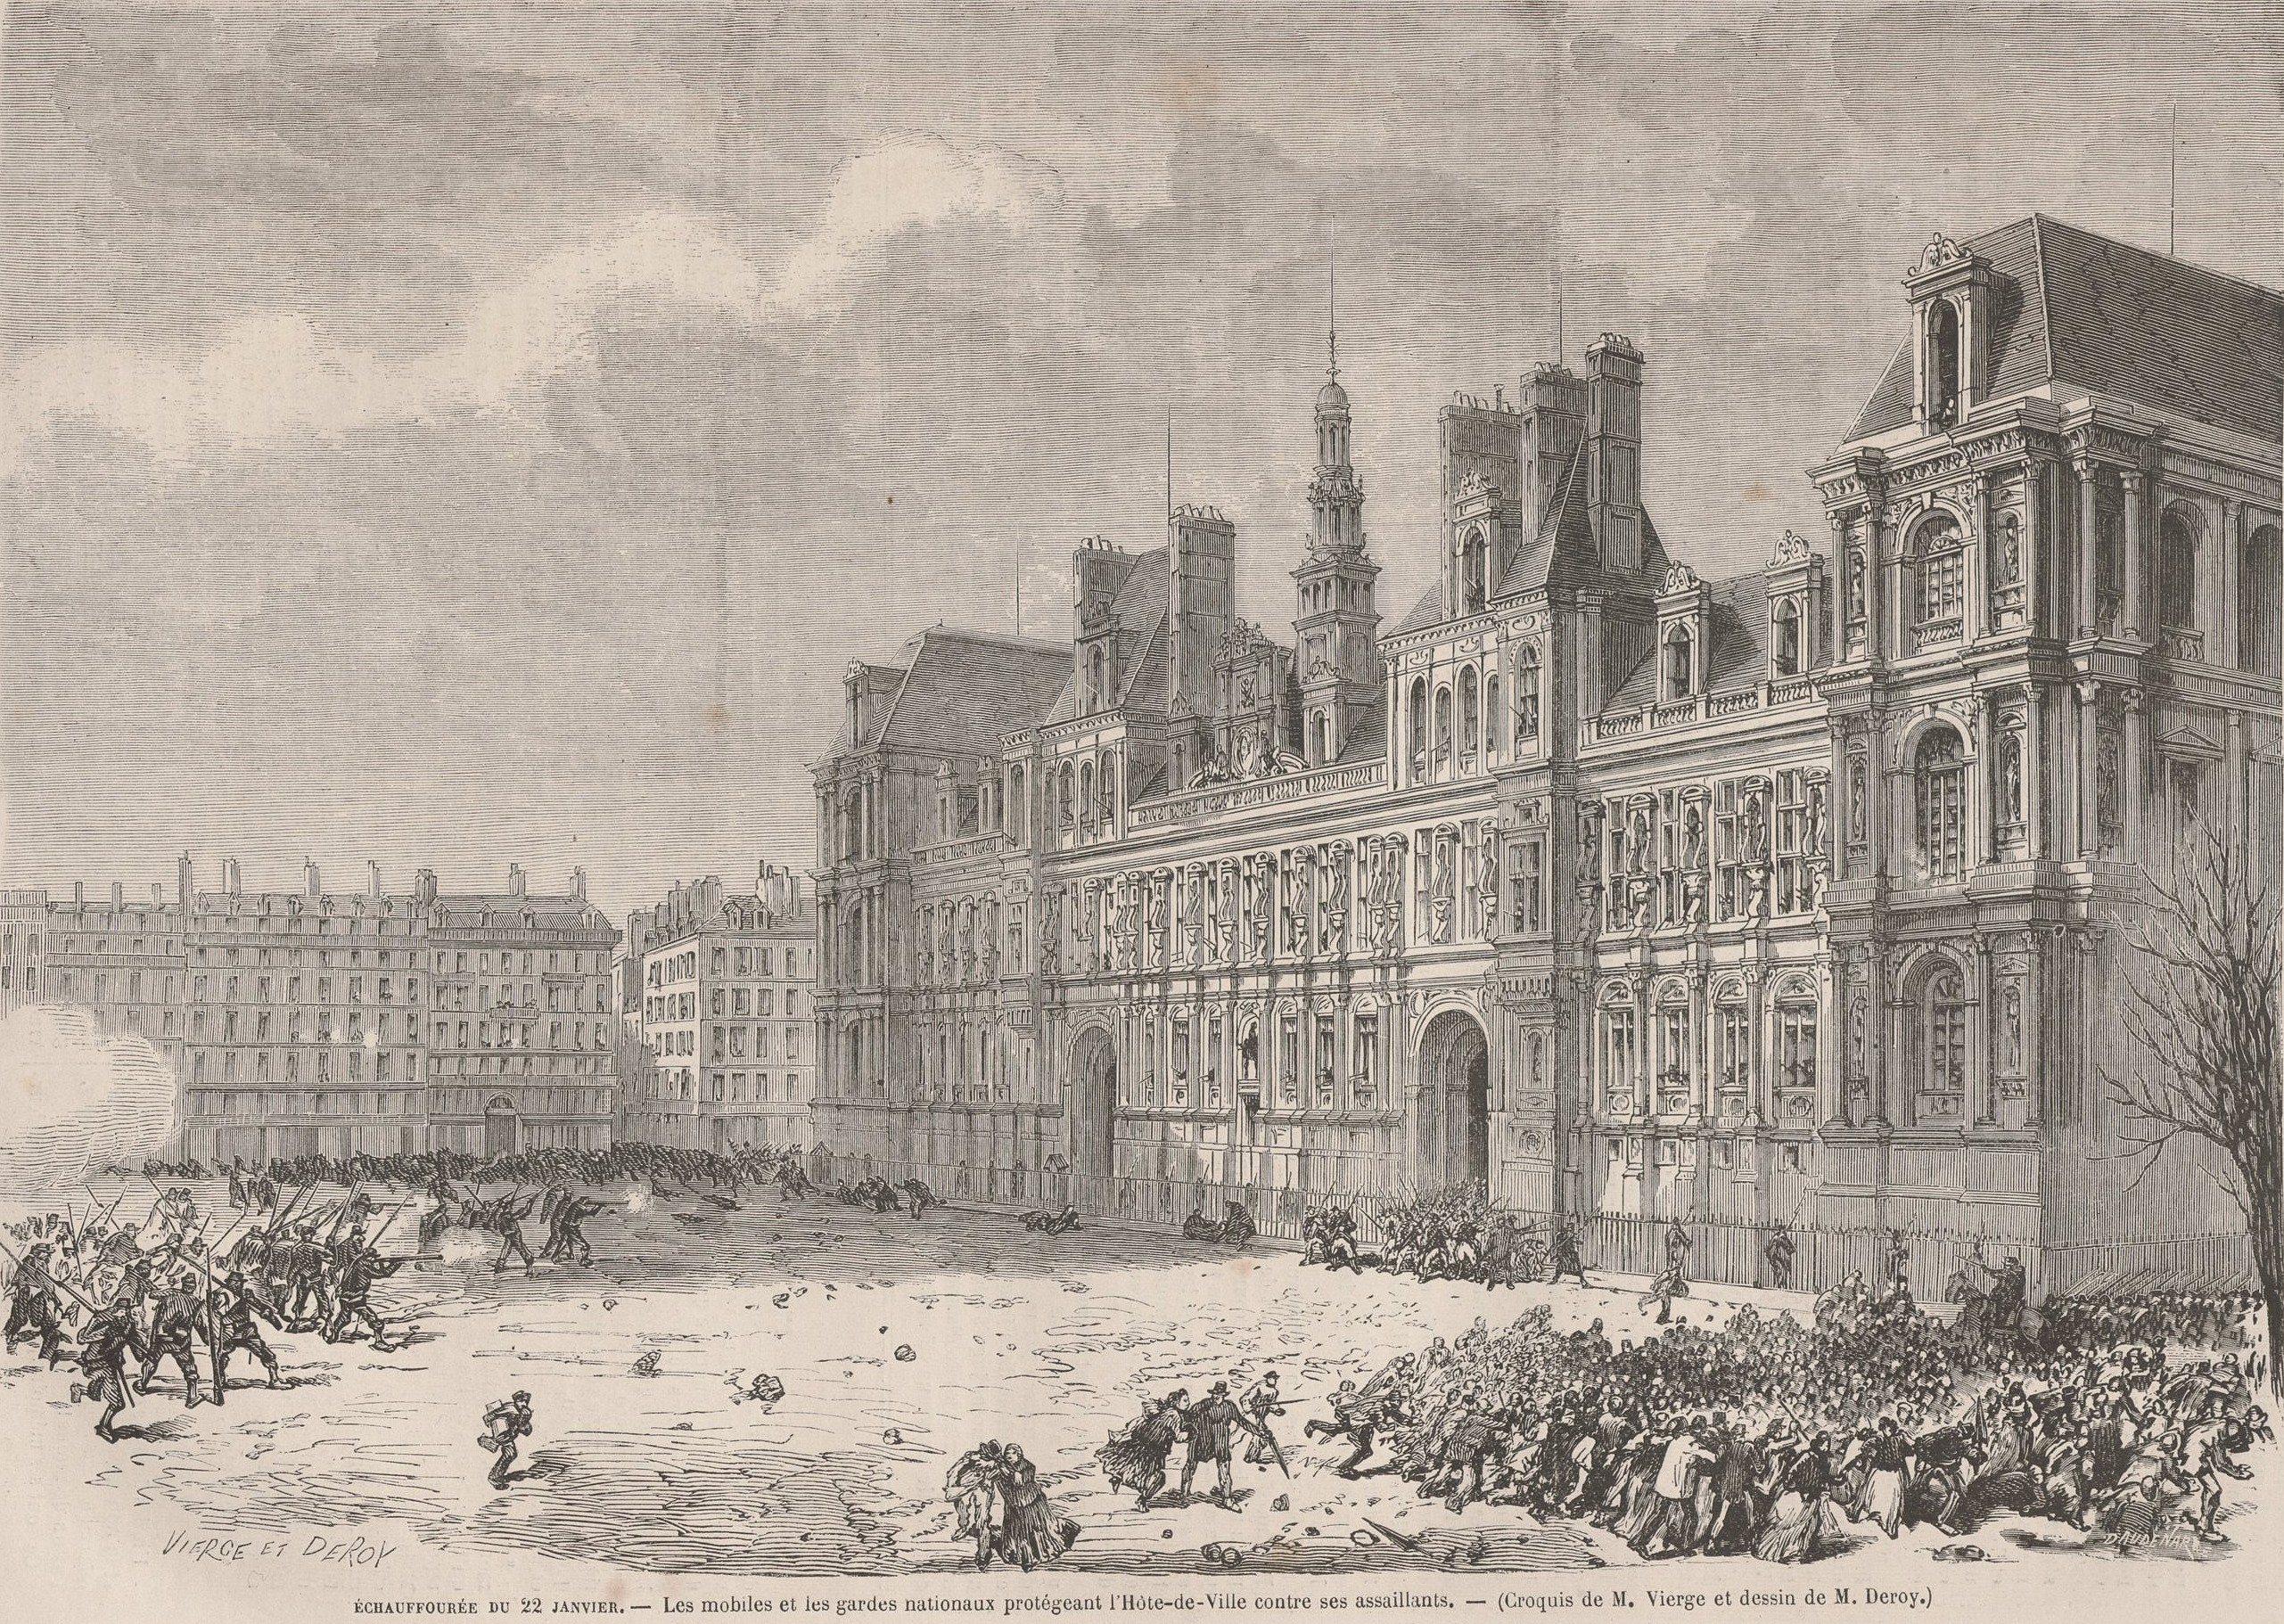 Proclamation de la République, le 4 septembre 1870, sur la place de l'Hôtel de Ville de Paris (source : L'Univers Illustré du 10 septembre 1870)